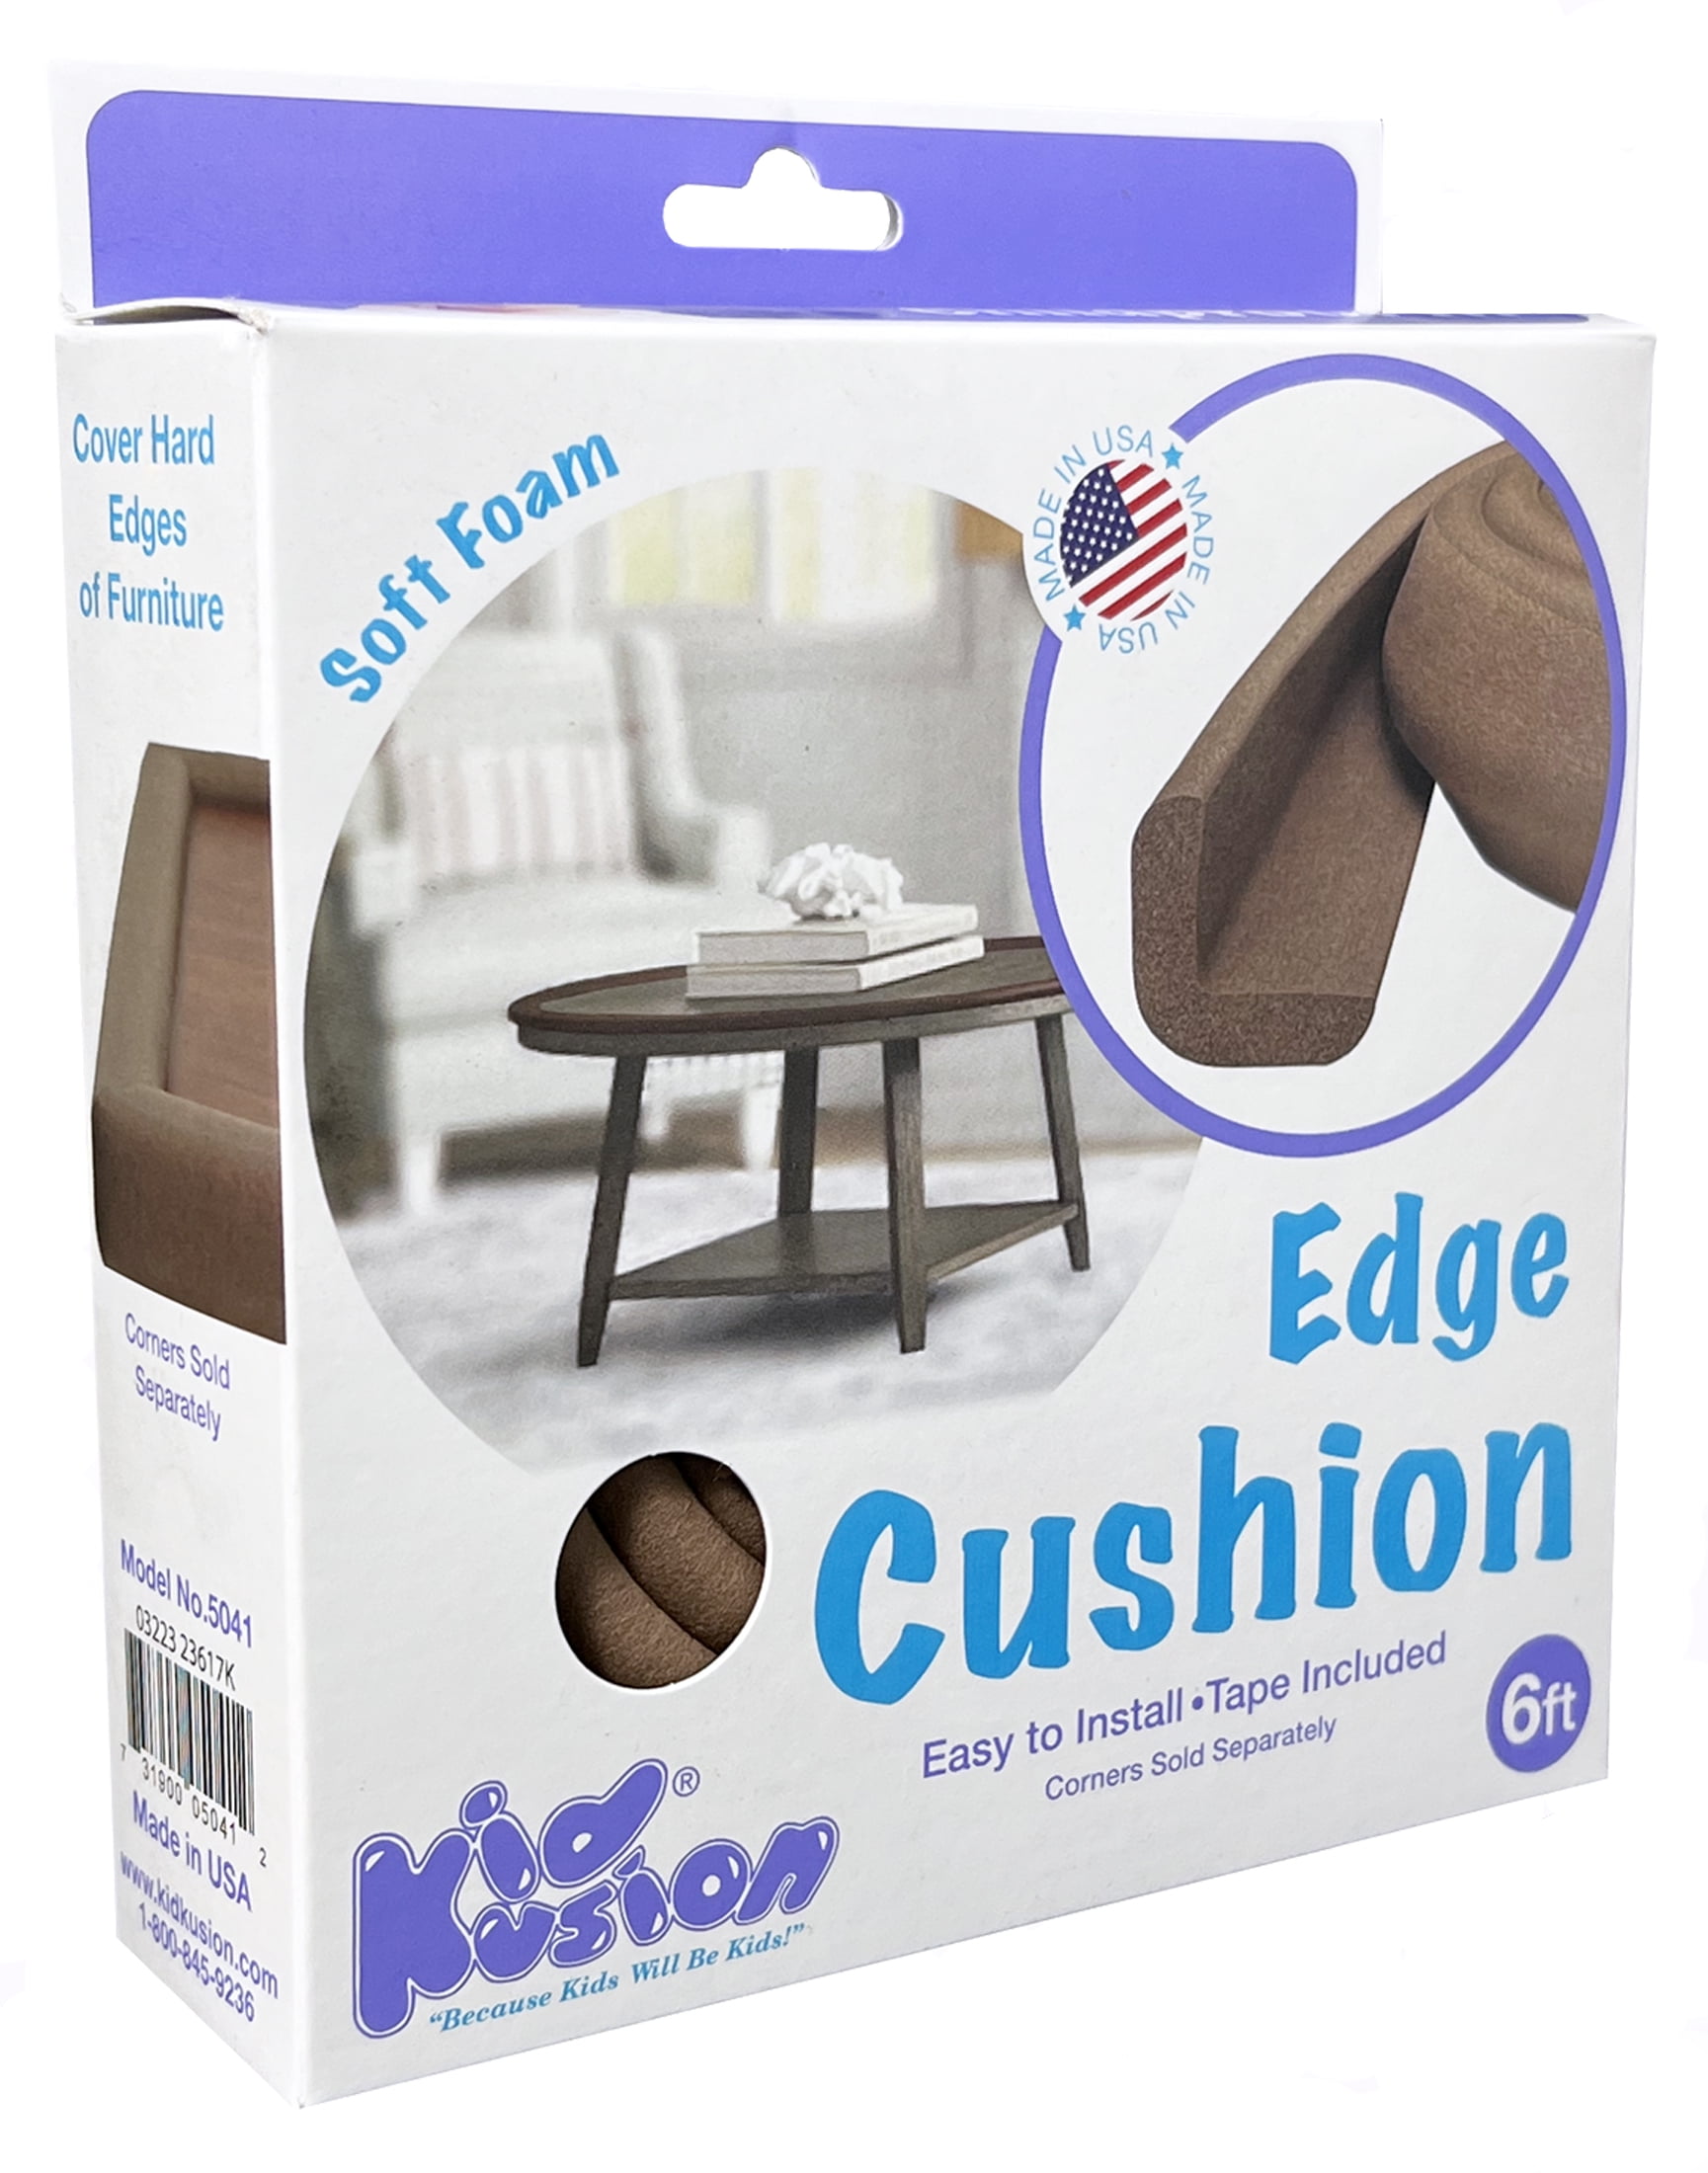 Kidkusion Edge Cushion, 1.0 ct, Brown